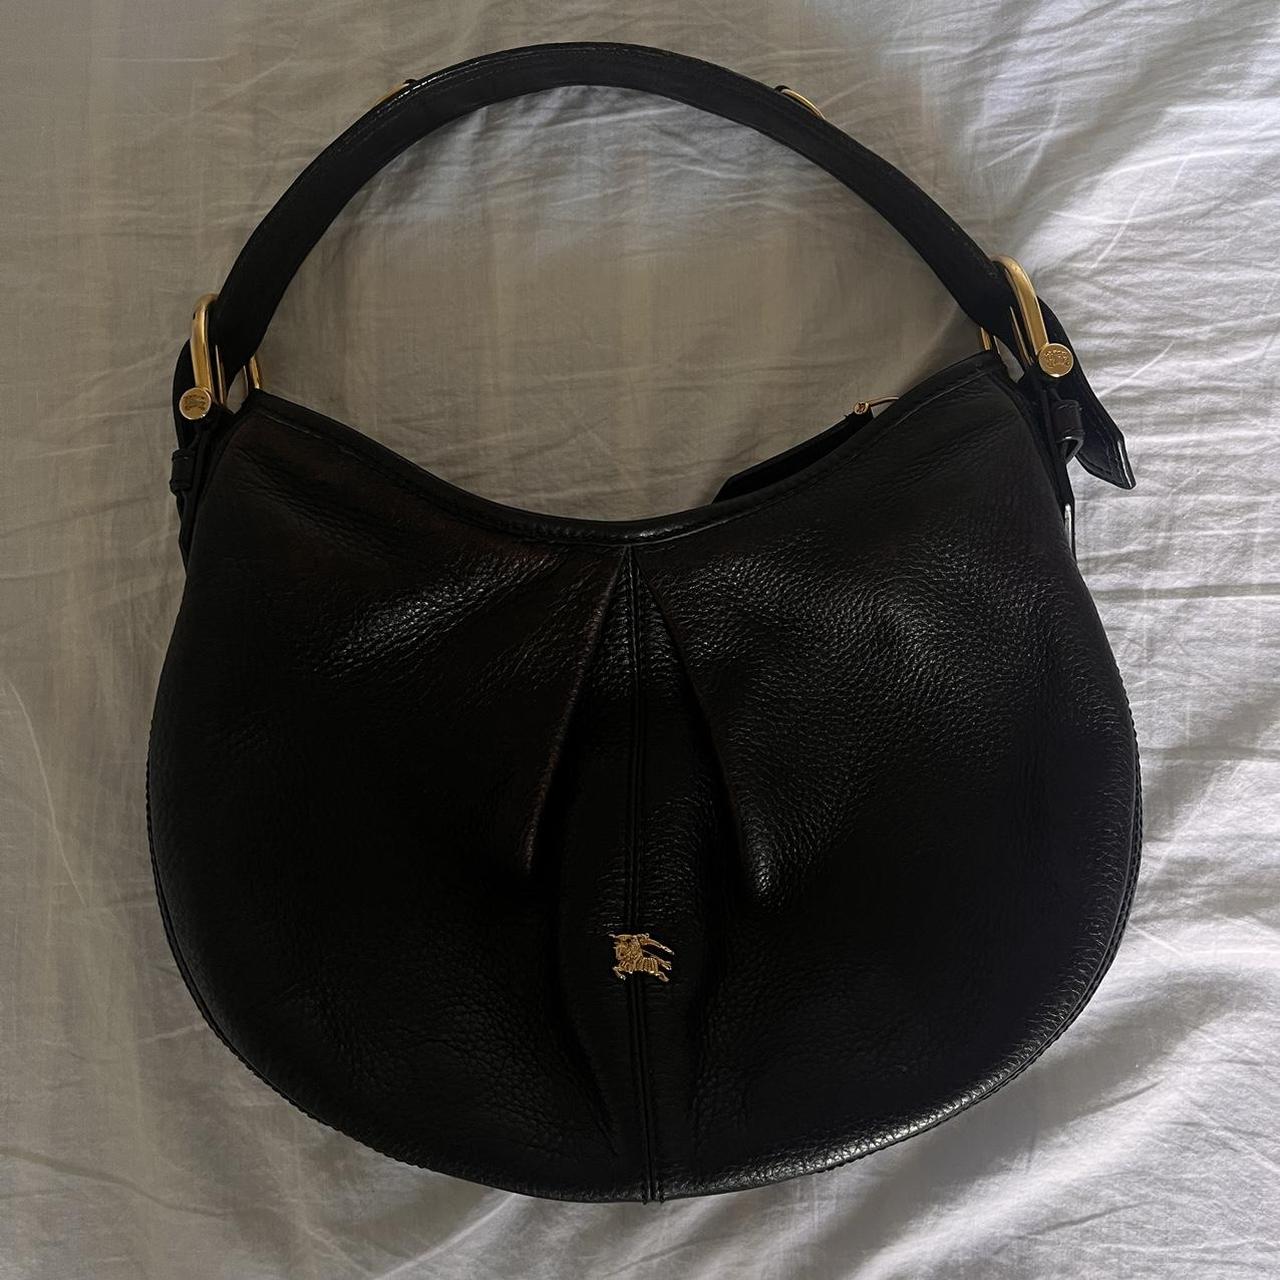 BURBERRY Shoulder Bag Size: Medium Aprx: L13” x H6” - Depop